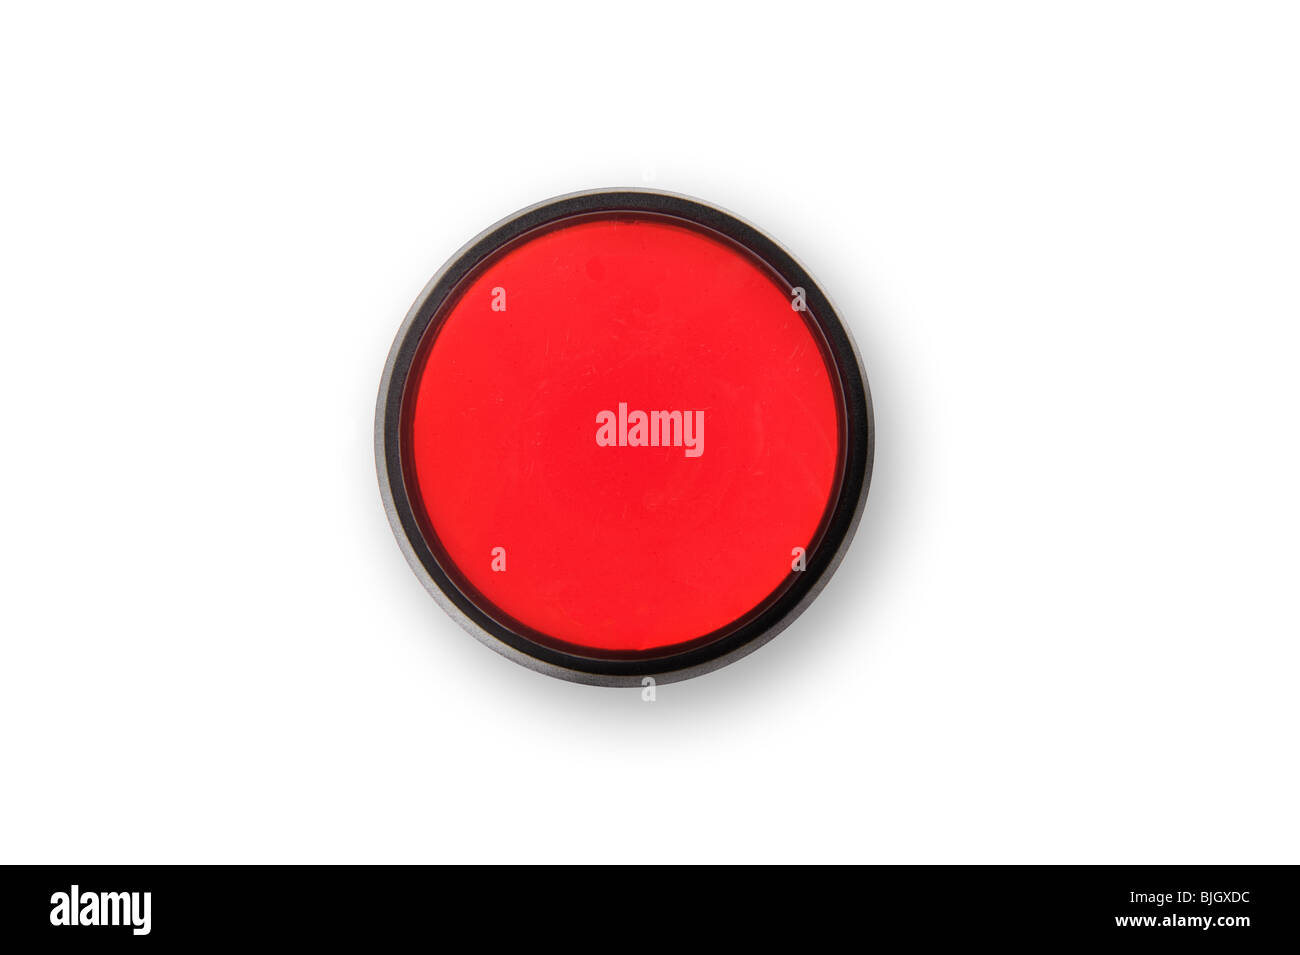 Un botón de pánico y de parada, de color rojo. Fácil de poner copiar encima del botón. Foto de stock